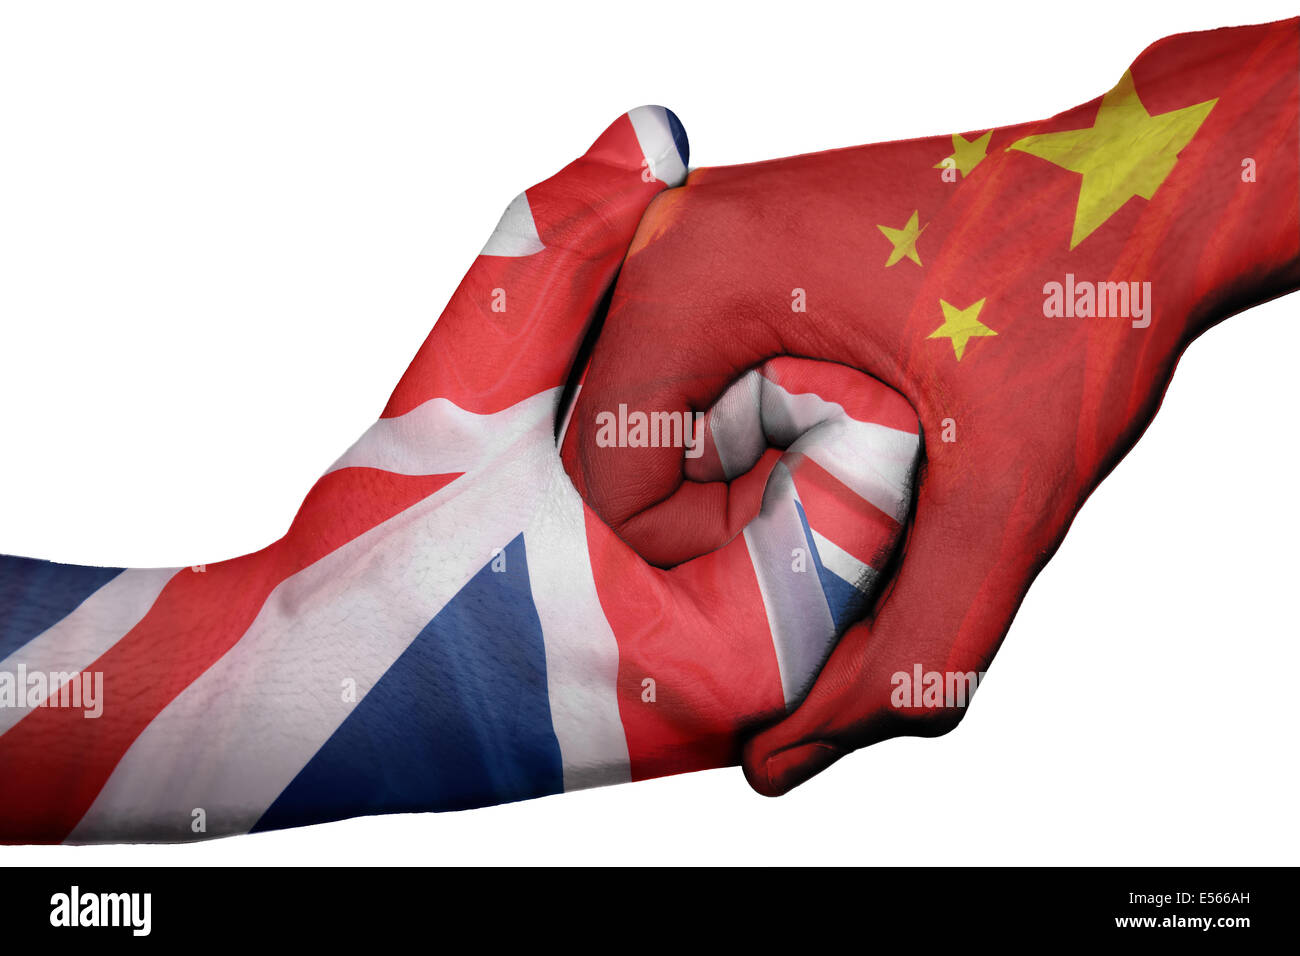 Handshake diplomatiche tra paesi: bandiere del Regno Unito e la Cina sovradipinta le due mani Foto Stock